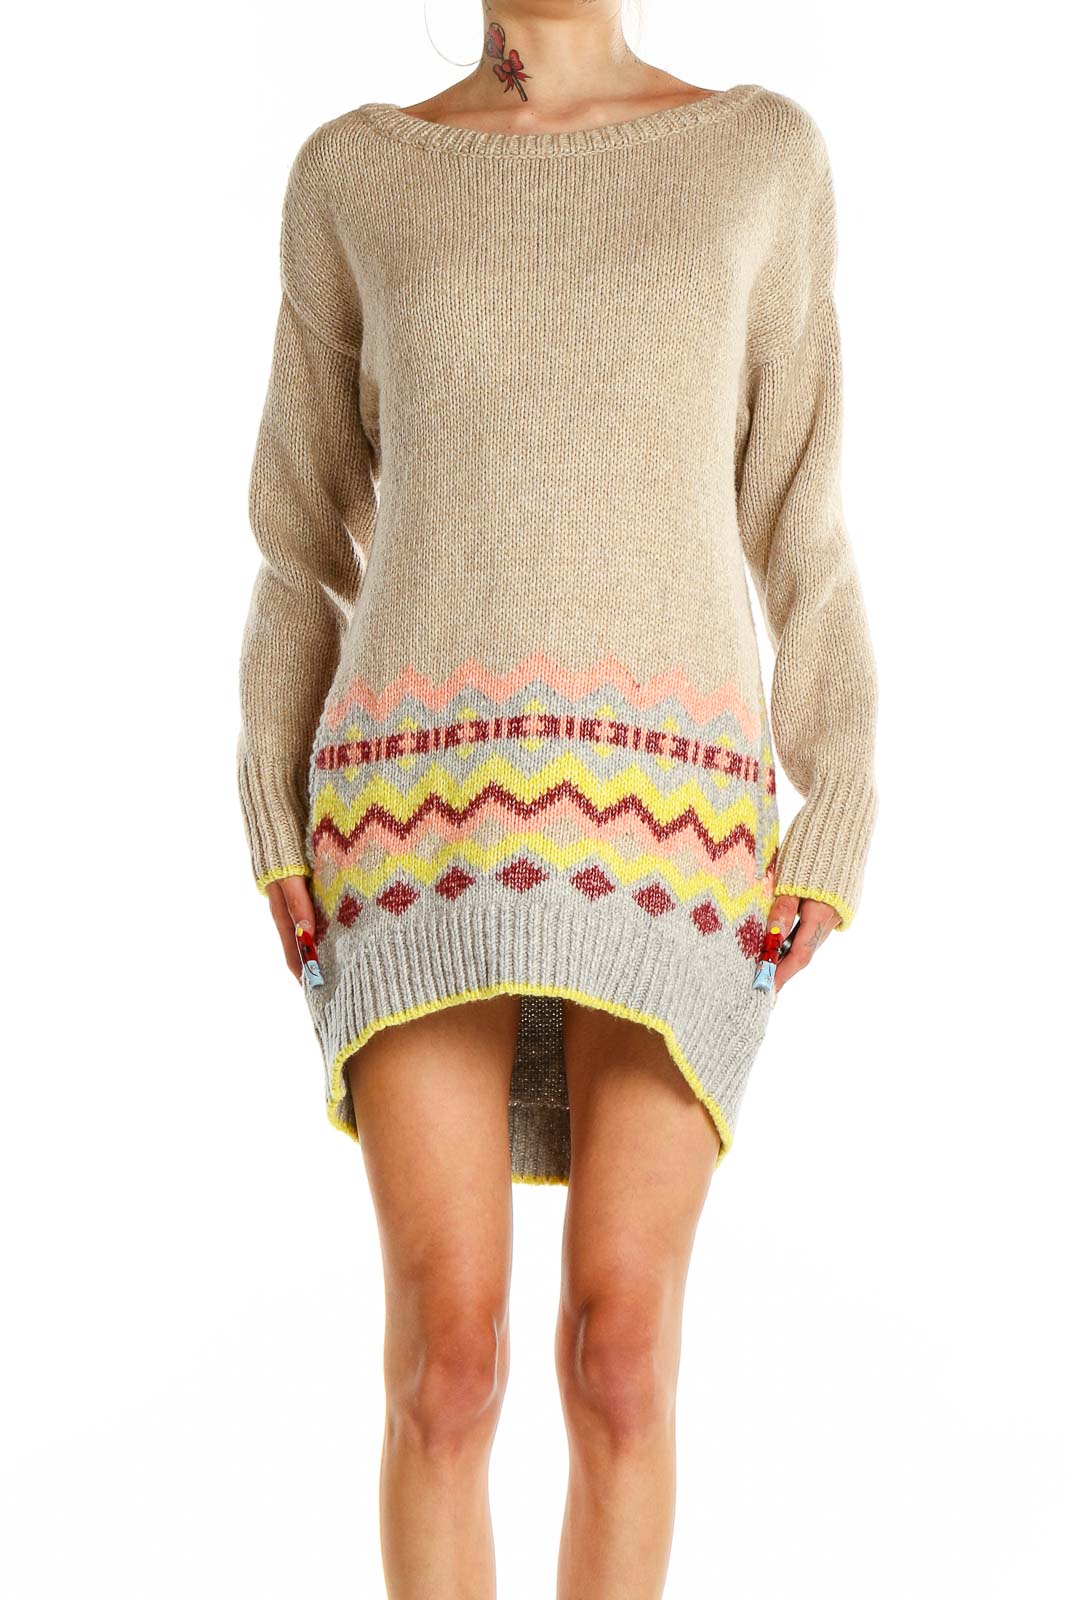 Beige Sweater Dress Front